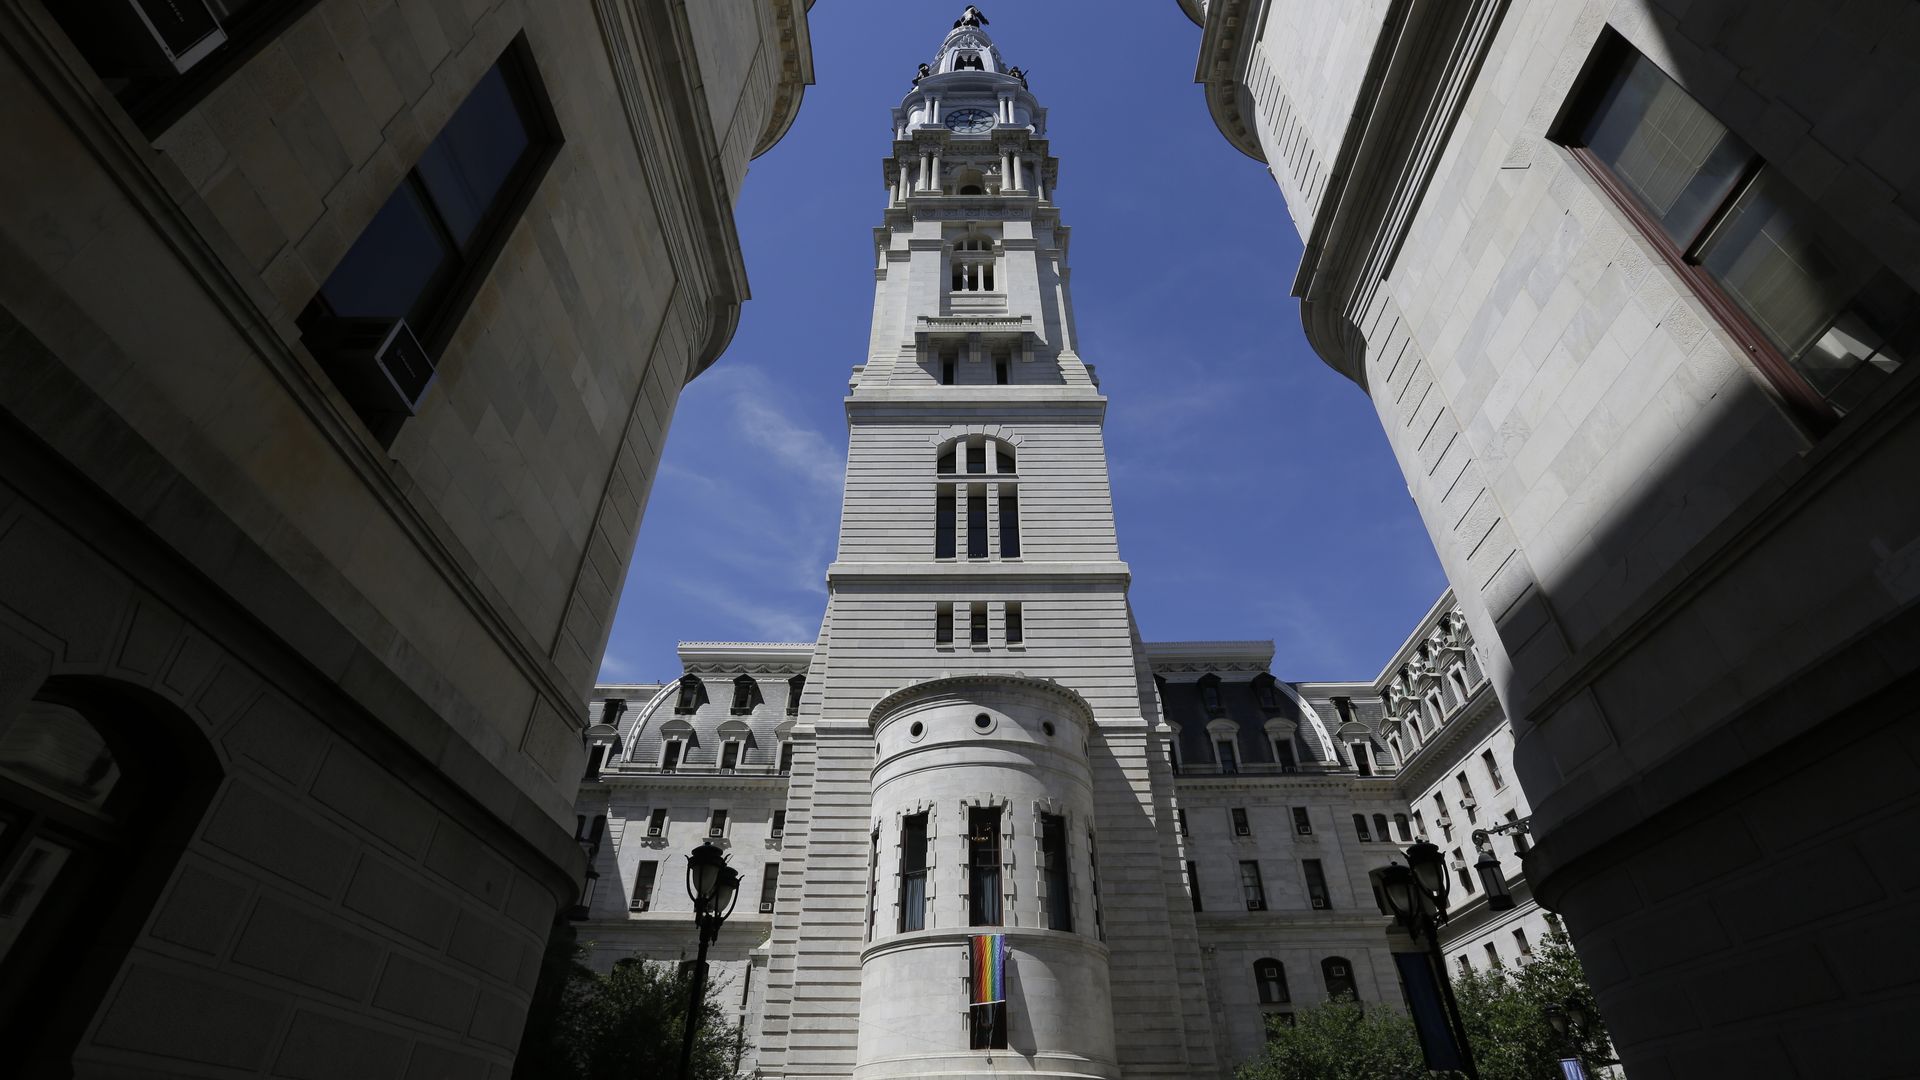 Philadelphia City Hall tower is seen Monday June 25, 2018 in Philadelphia. (AP Photo/Jacqueline Larma)